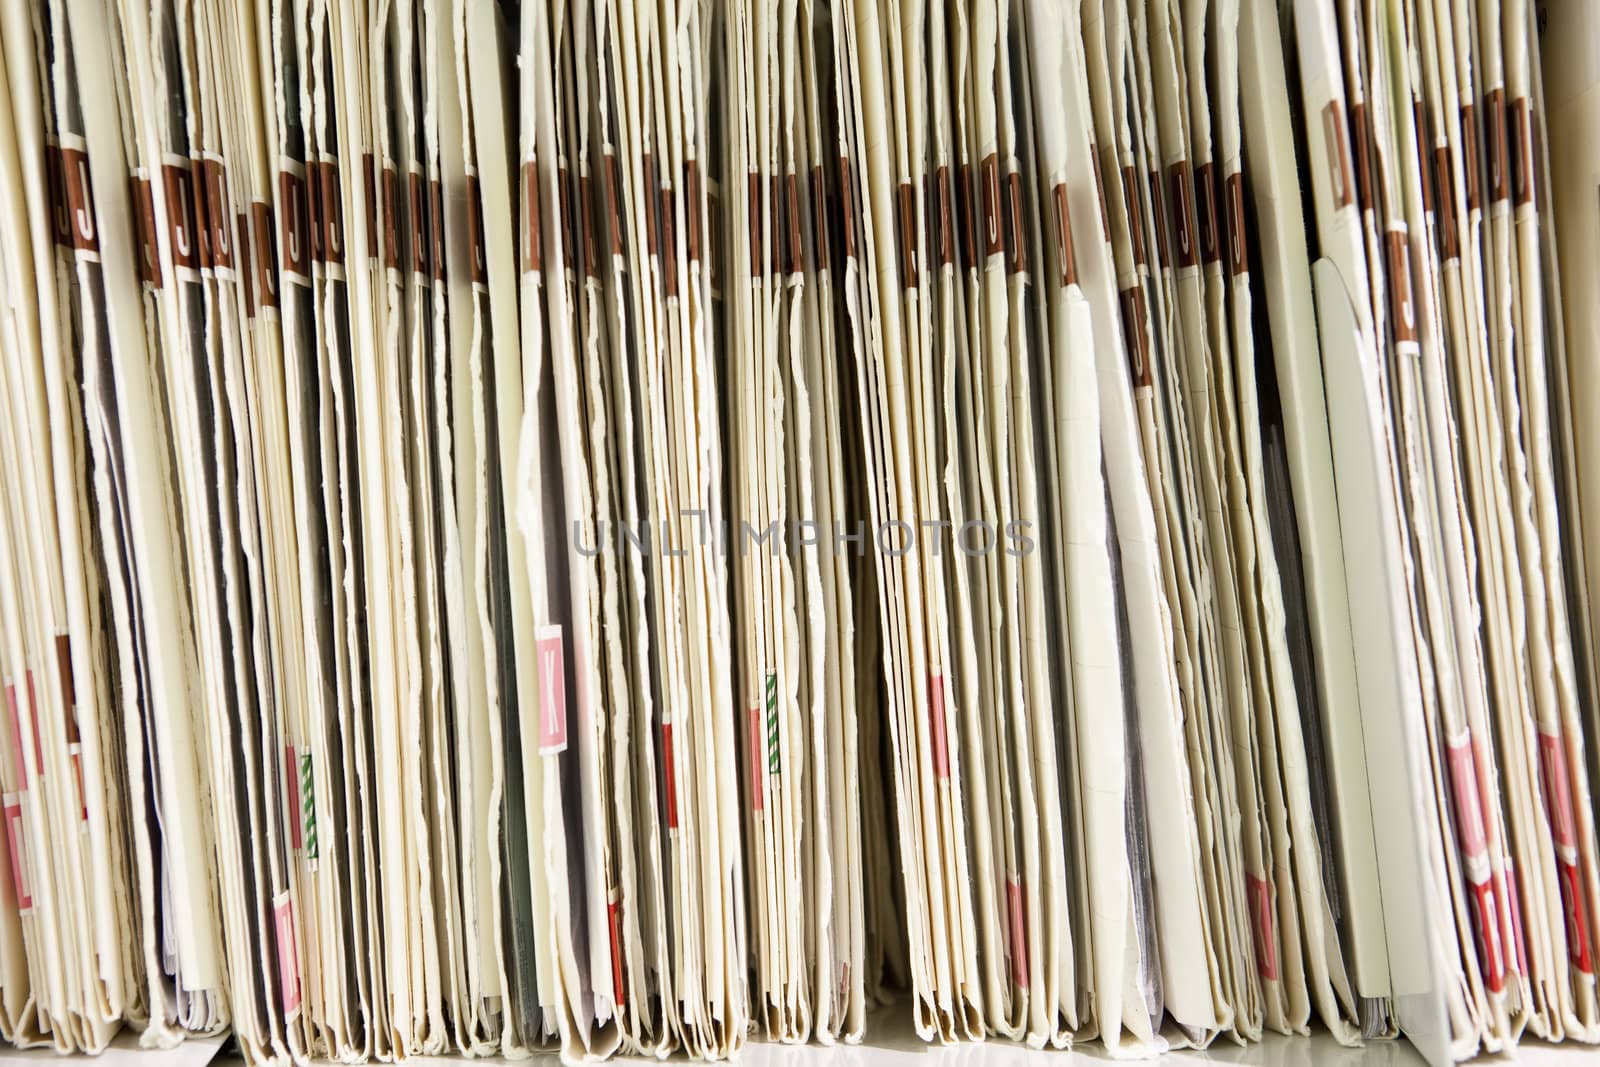 Folders in a row by gemenacom